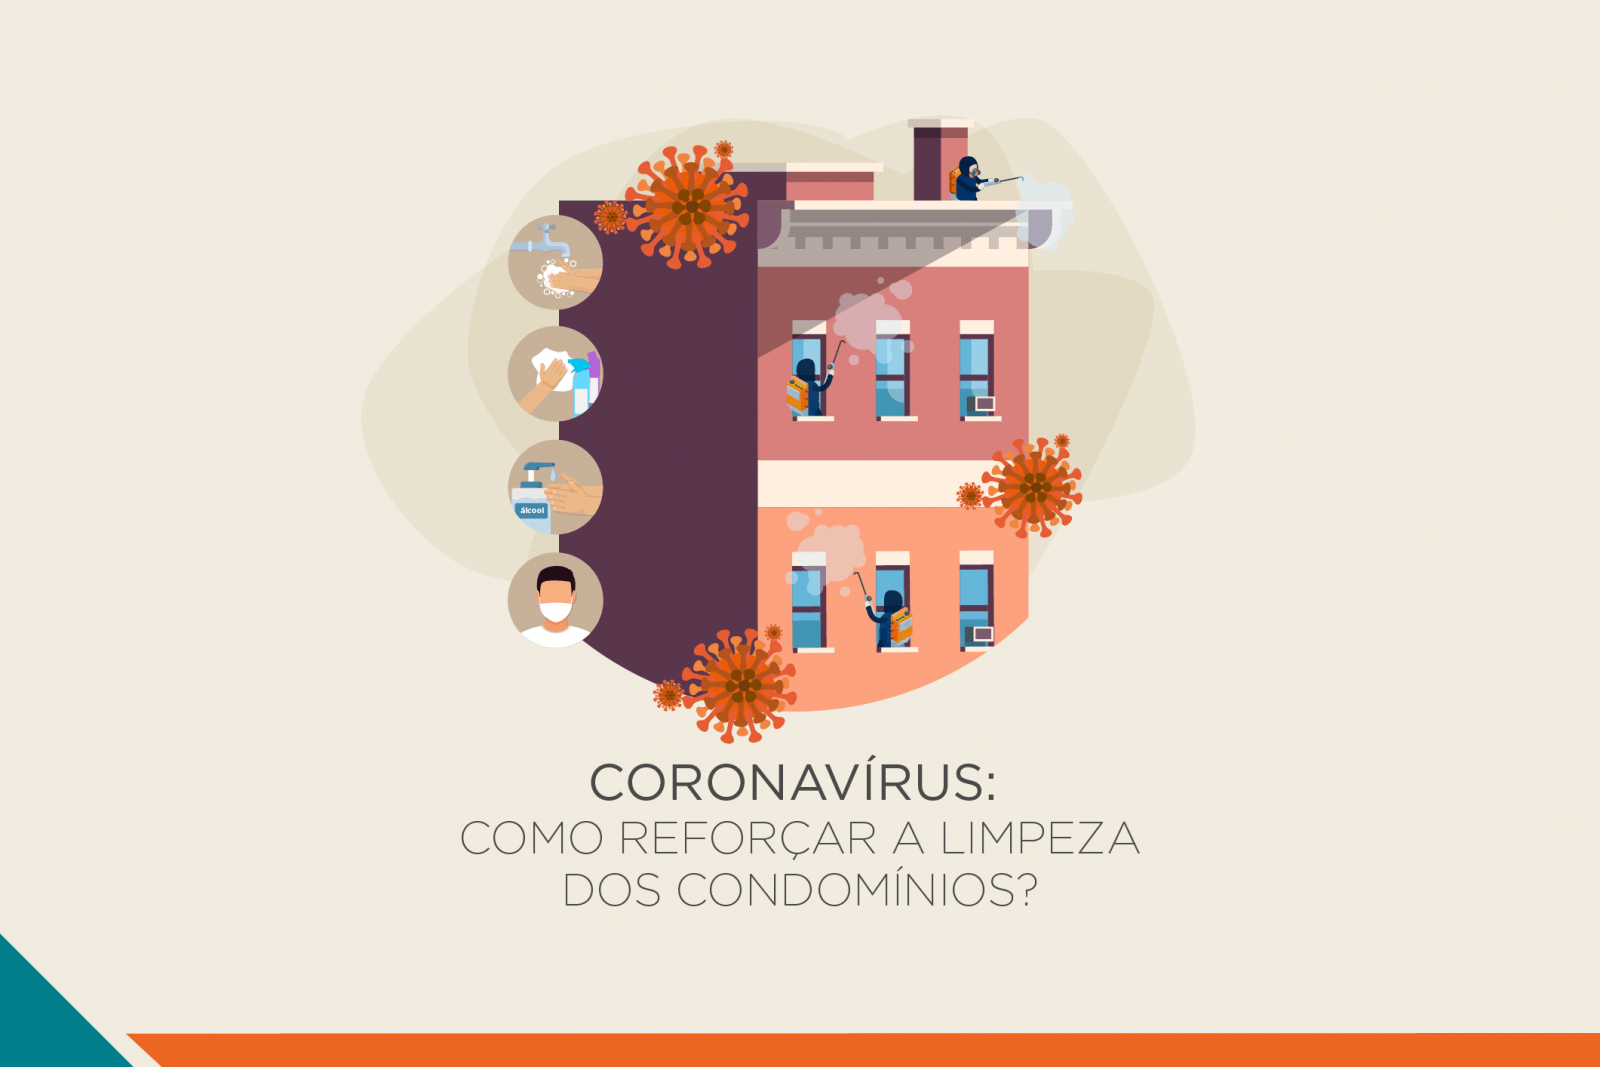 Condomínios residenciais e coronavírus: como reforçar a limpeza e a segurança em tempos de crise